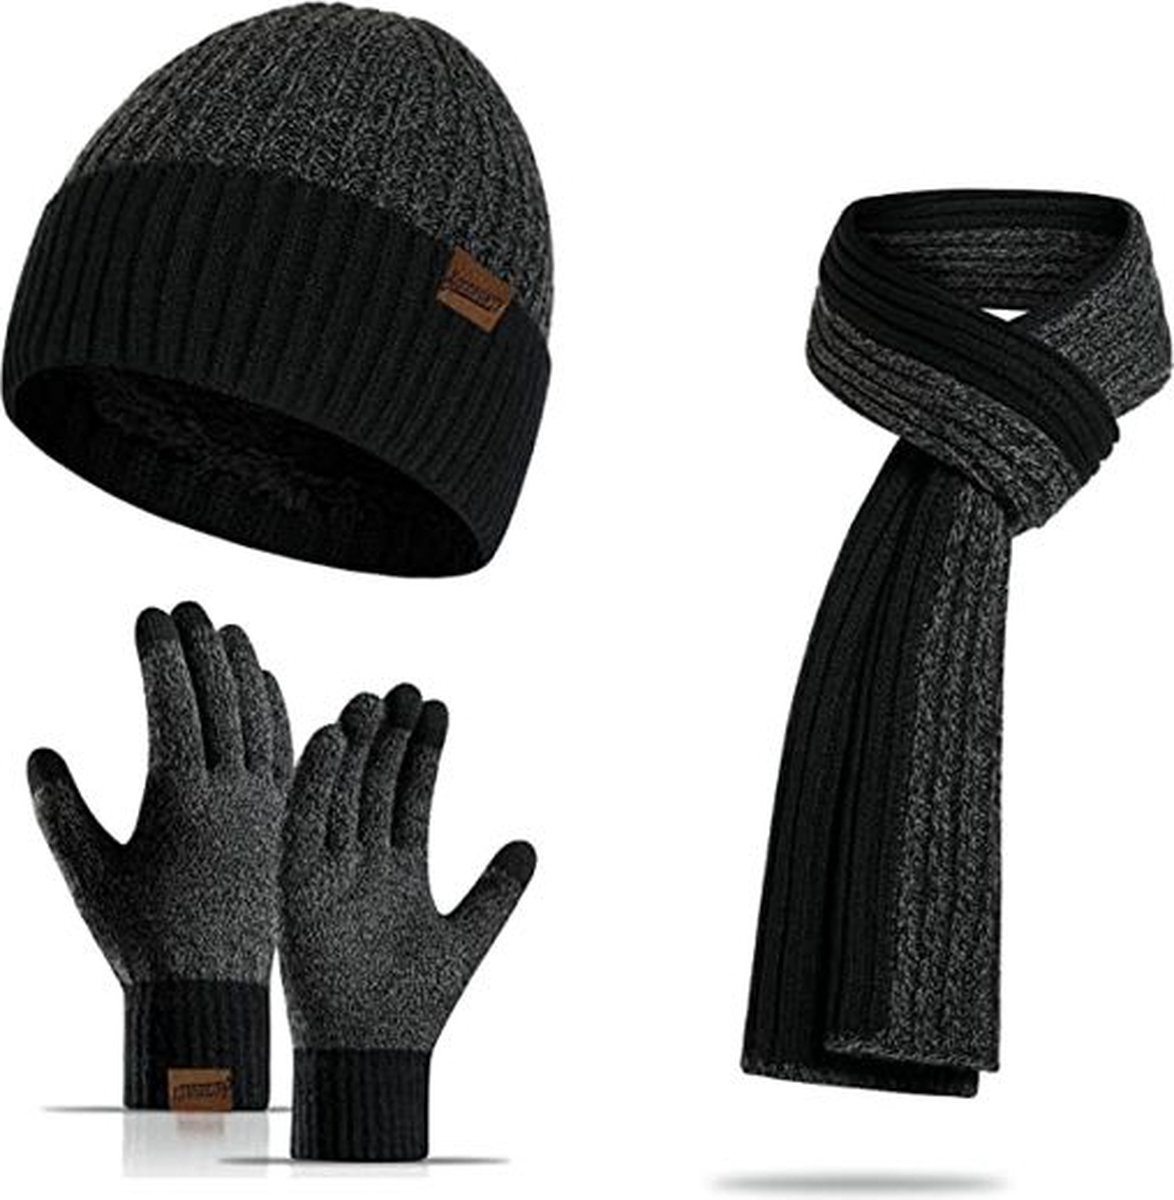 FEDEC Winterset Voor Mannen - Handschoenen - Sjaal - Muts - Zwart / Grijs